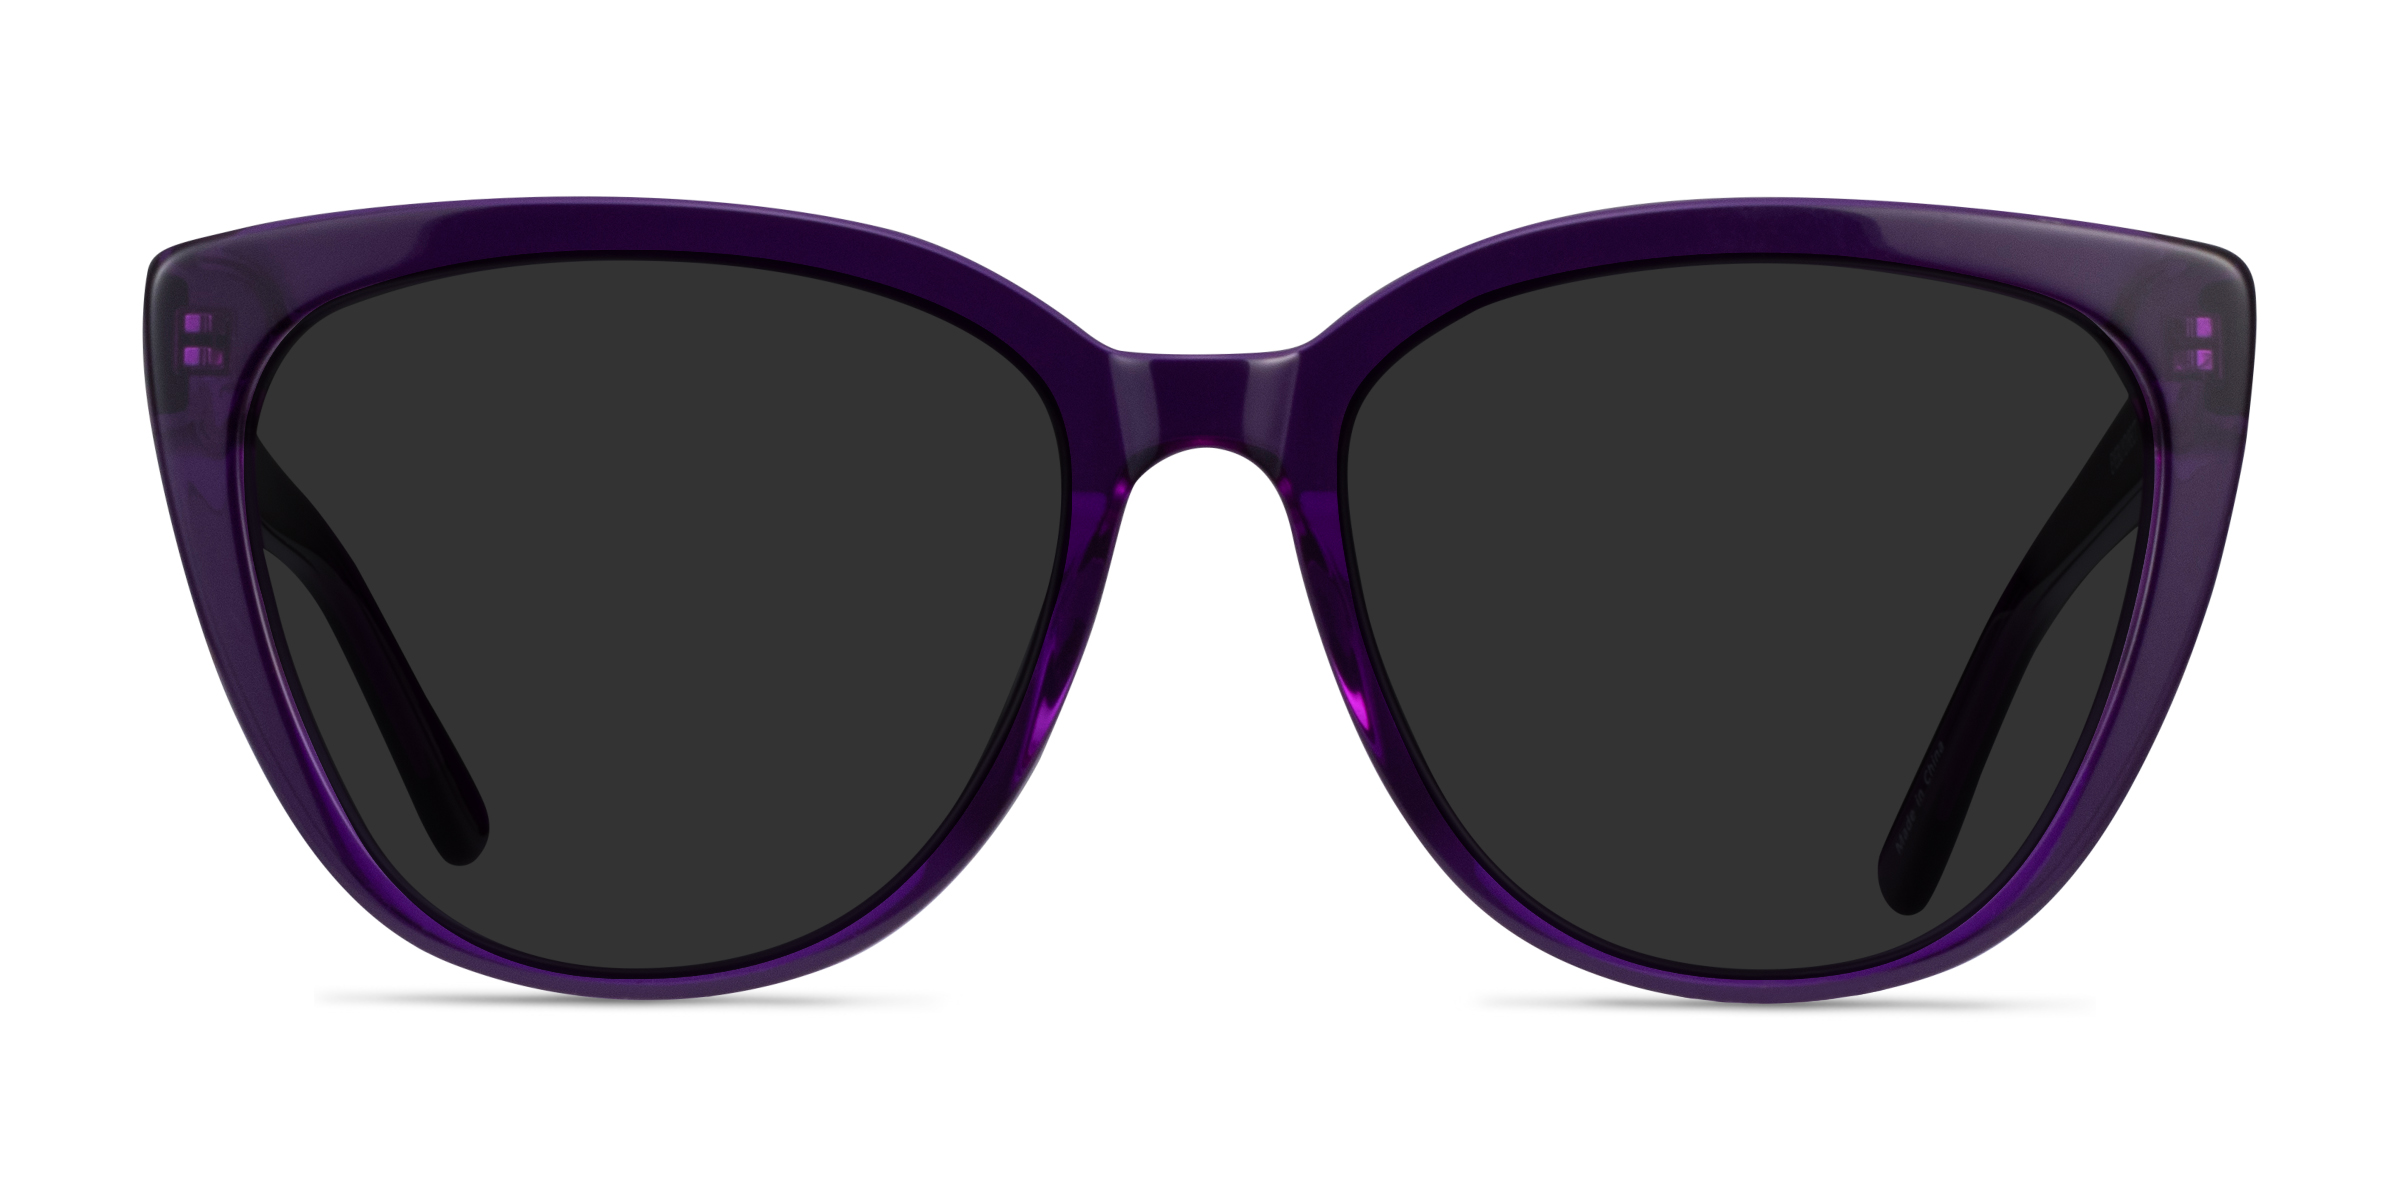 Lemonade - Cat Eye Purple Frame Sunglasses For Women | Eyebuydirect